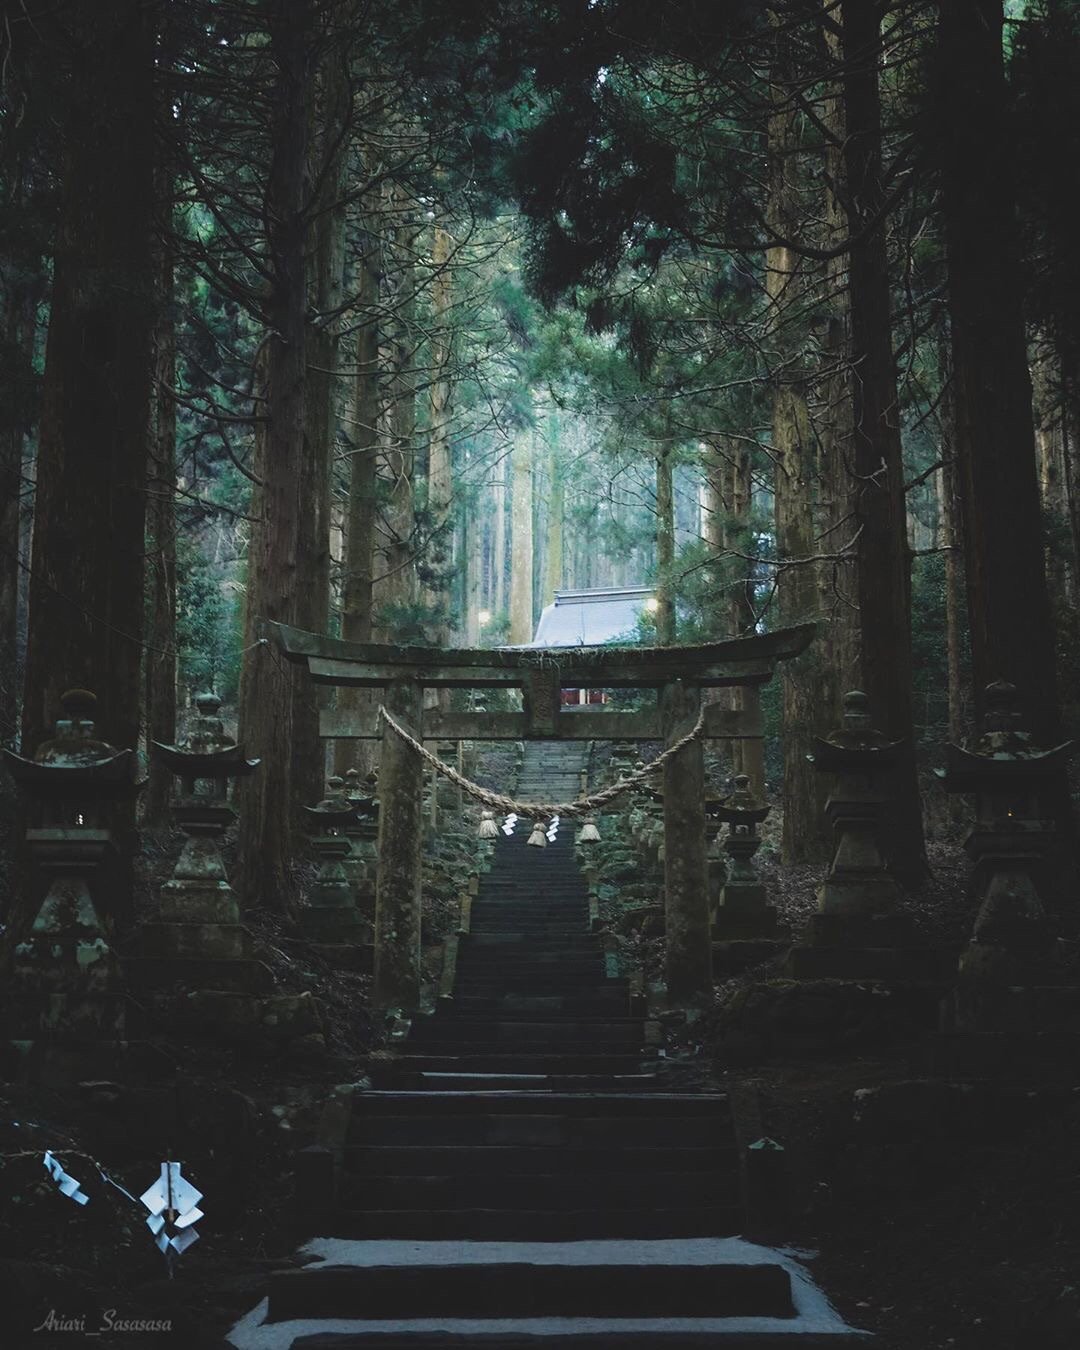 萤火之森 的原景地上色见熊野座神社 四季都有独特的神秘美感